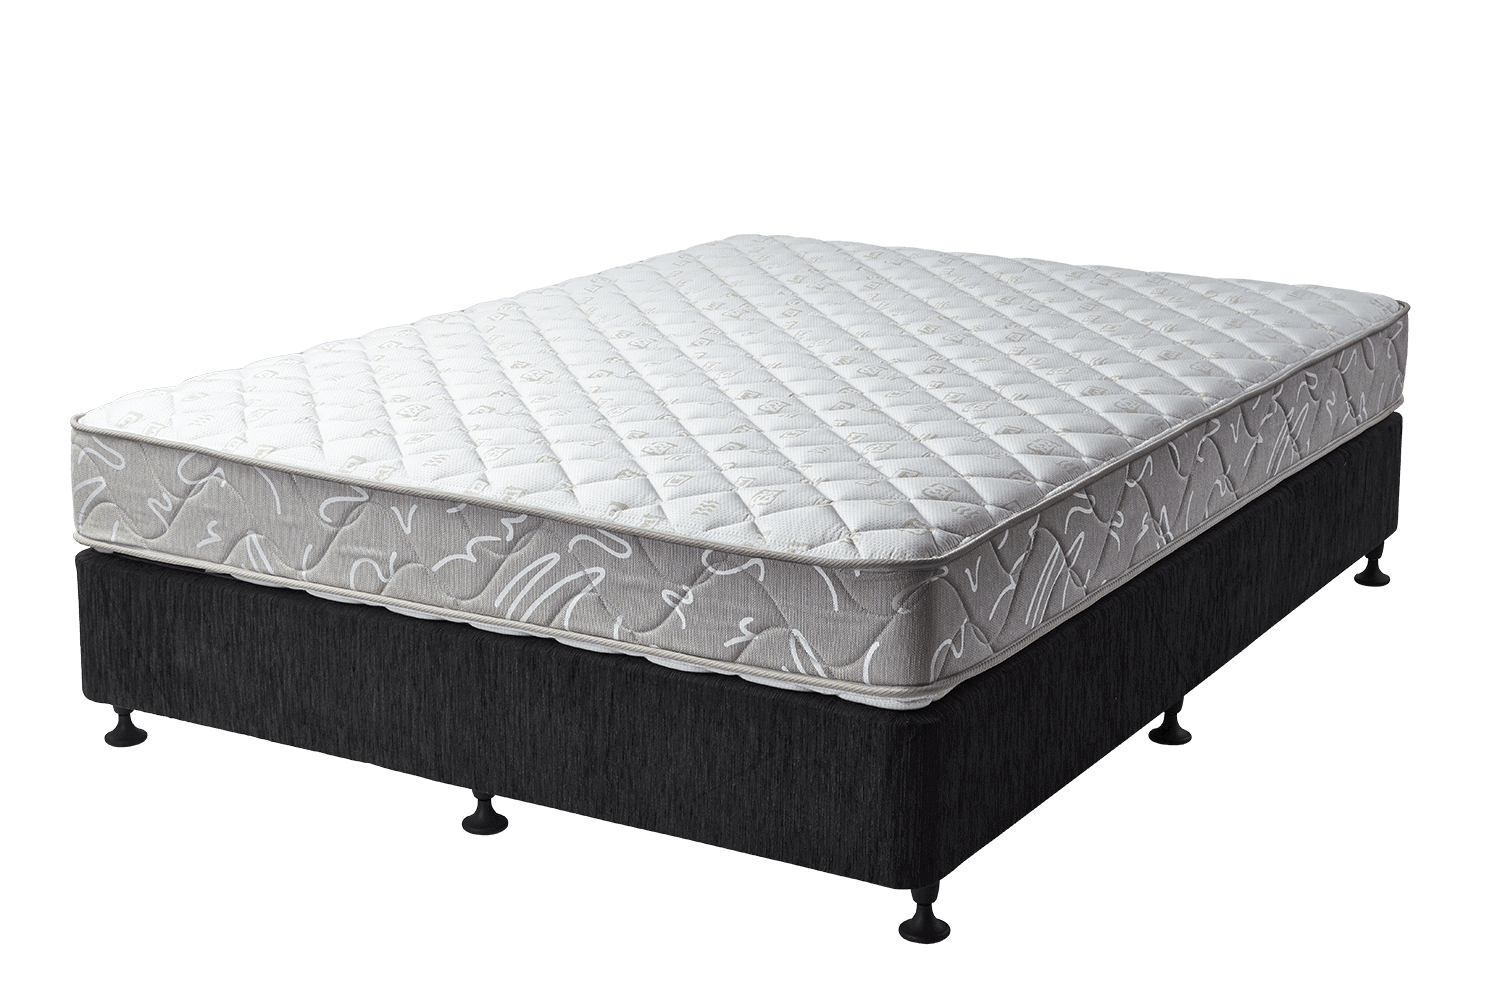 soften up a firm mattress